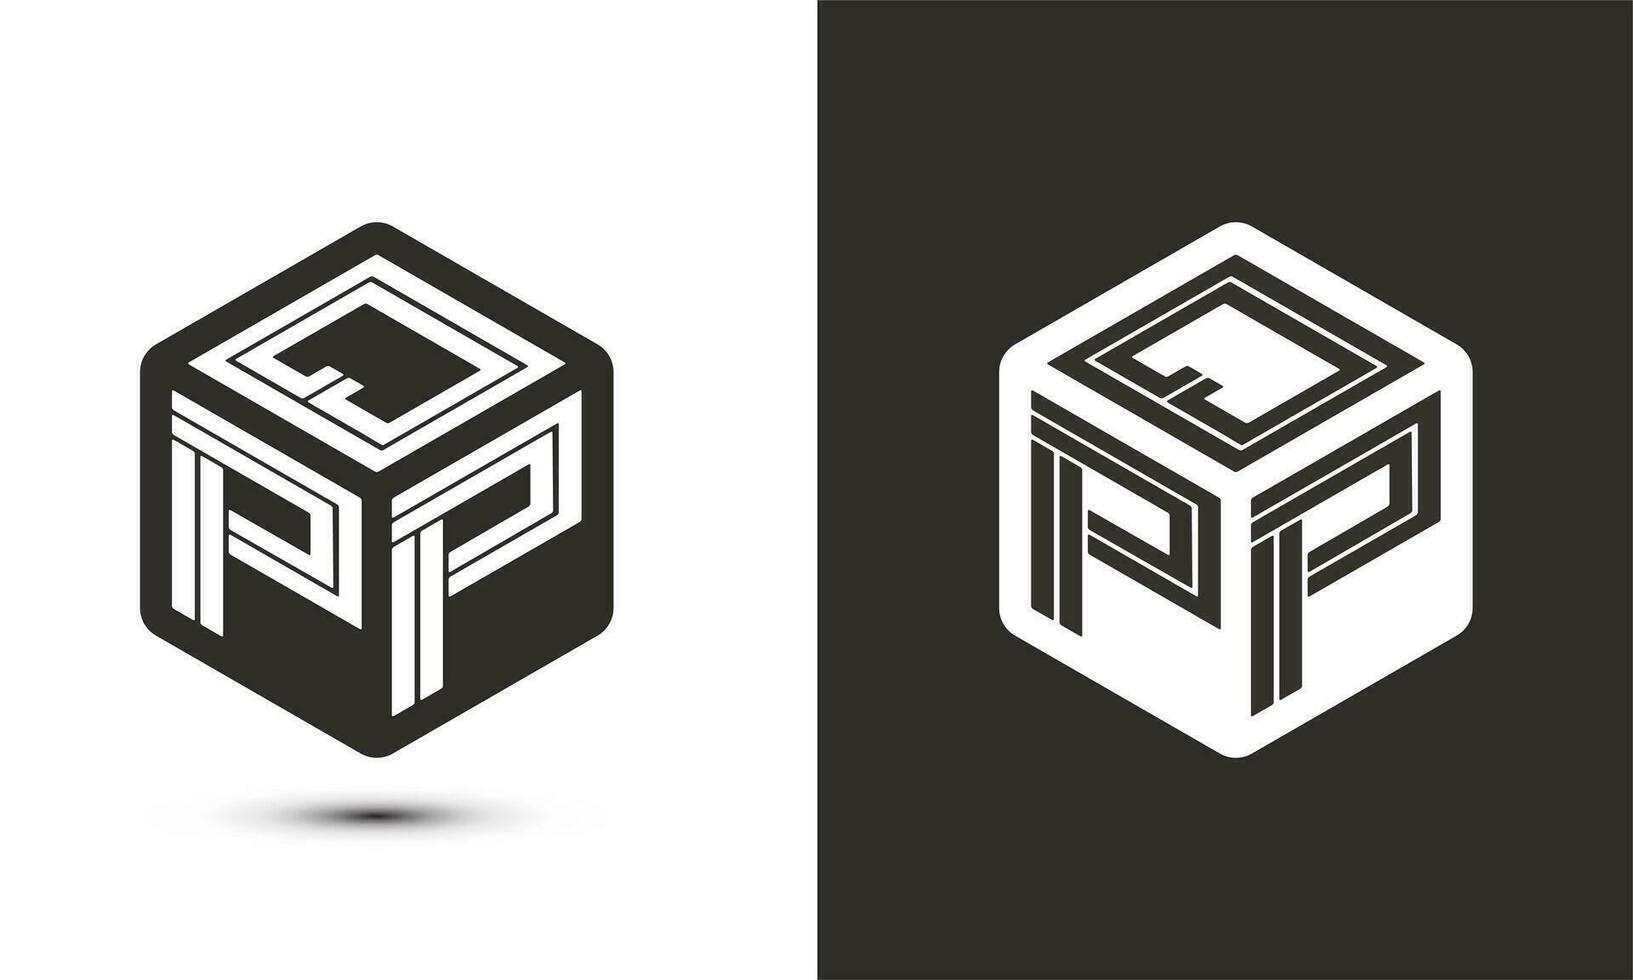 qpp brief logo ontwerp met illustrator kubus logo, vector logo modern alfabet doopvont overlappen stijl.